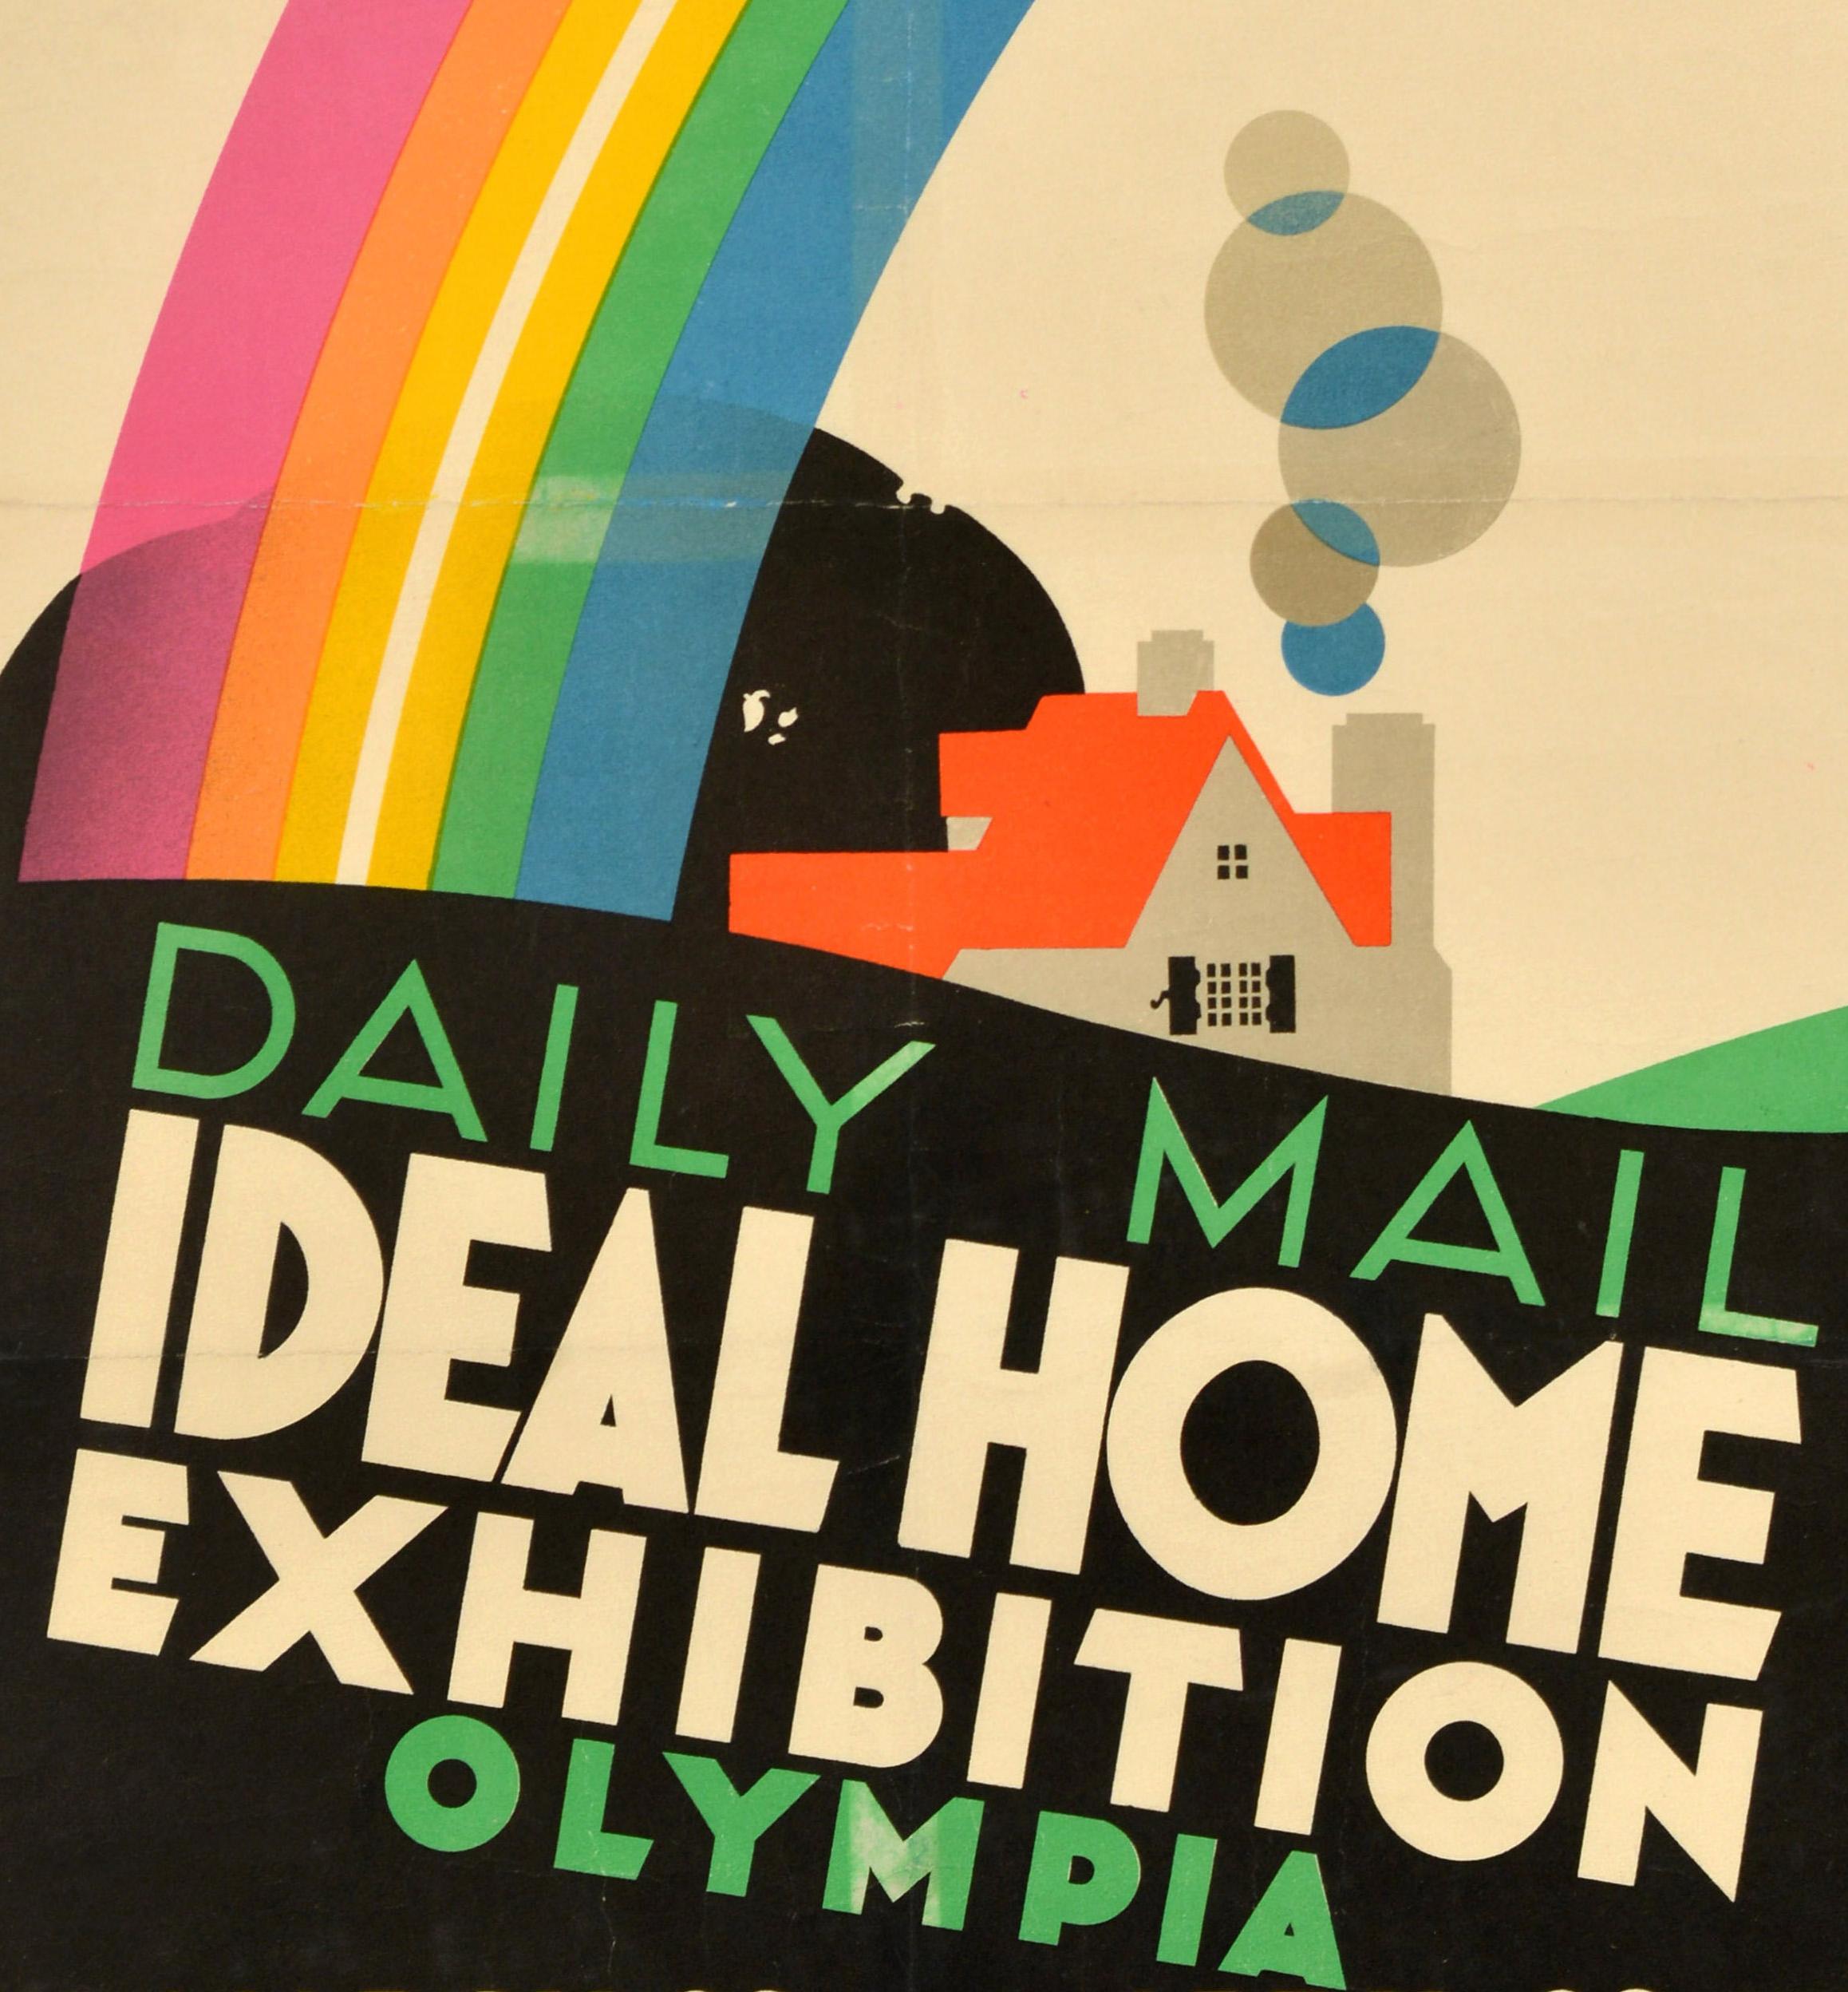 Affiche publicitaire originale d'époque pour le Daily Mail Ideal Home Exhibition Olympia qui s'est tenu du 19 mars au 29 avril - We Are Exhibiting - comportant une illustration colorée du célèbre affichiste britannique Frank Newbould (1887-1951)